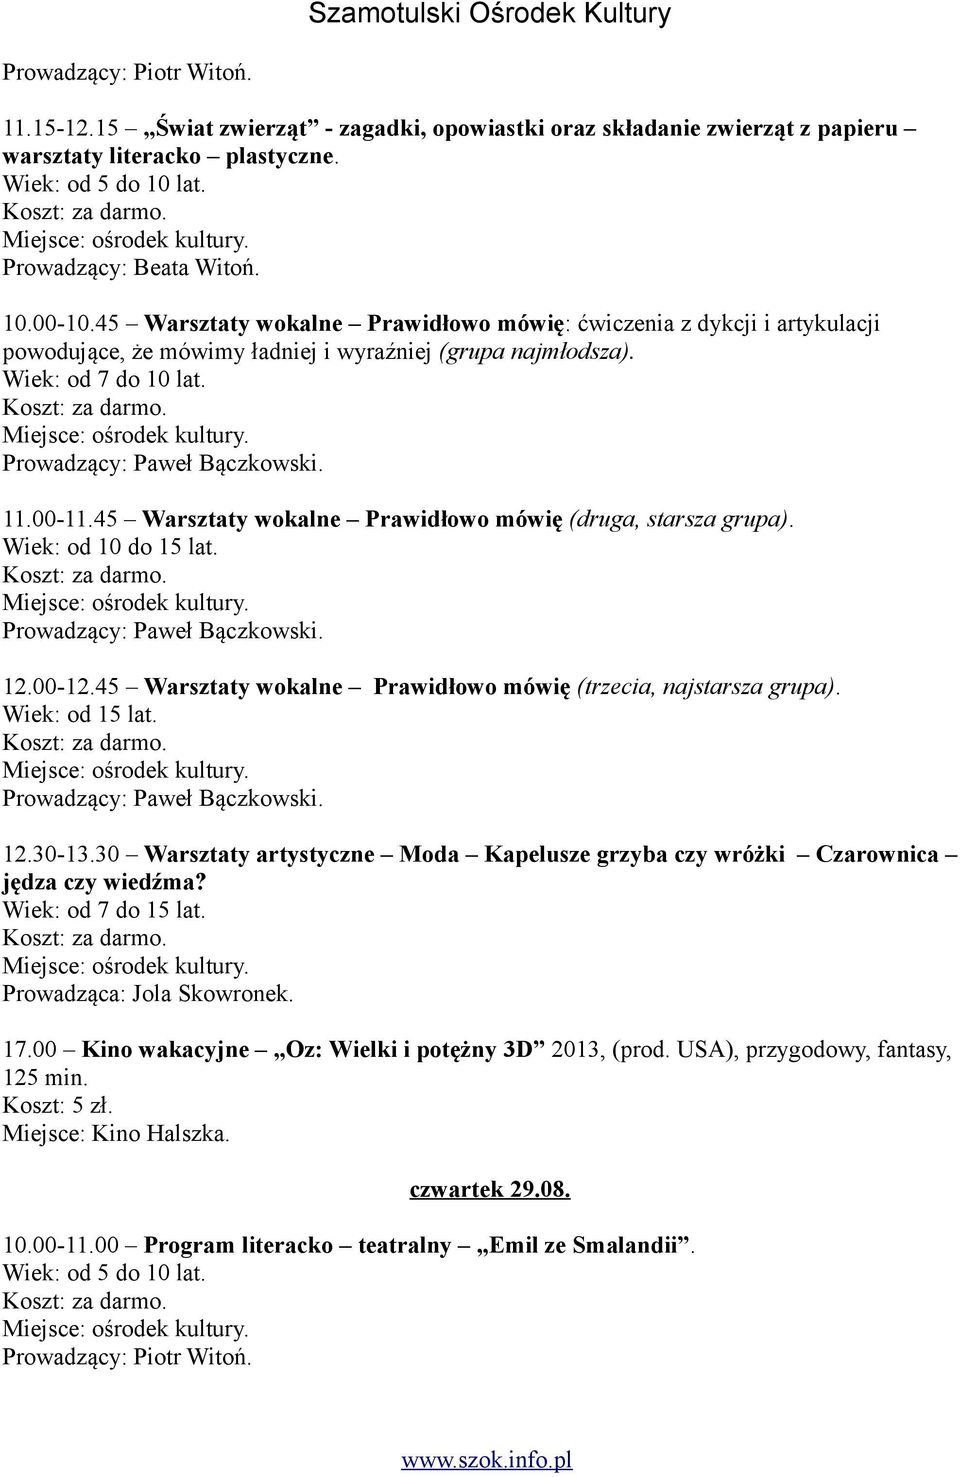 45 Warsztaty wokalne Prawidłowo mówię (druga, starsza grupa). 12.00-12.45 Warsztaty wokalne Prawidłowo mówię (trzecia, najstarsza grupa). 12.30-13.